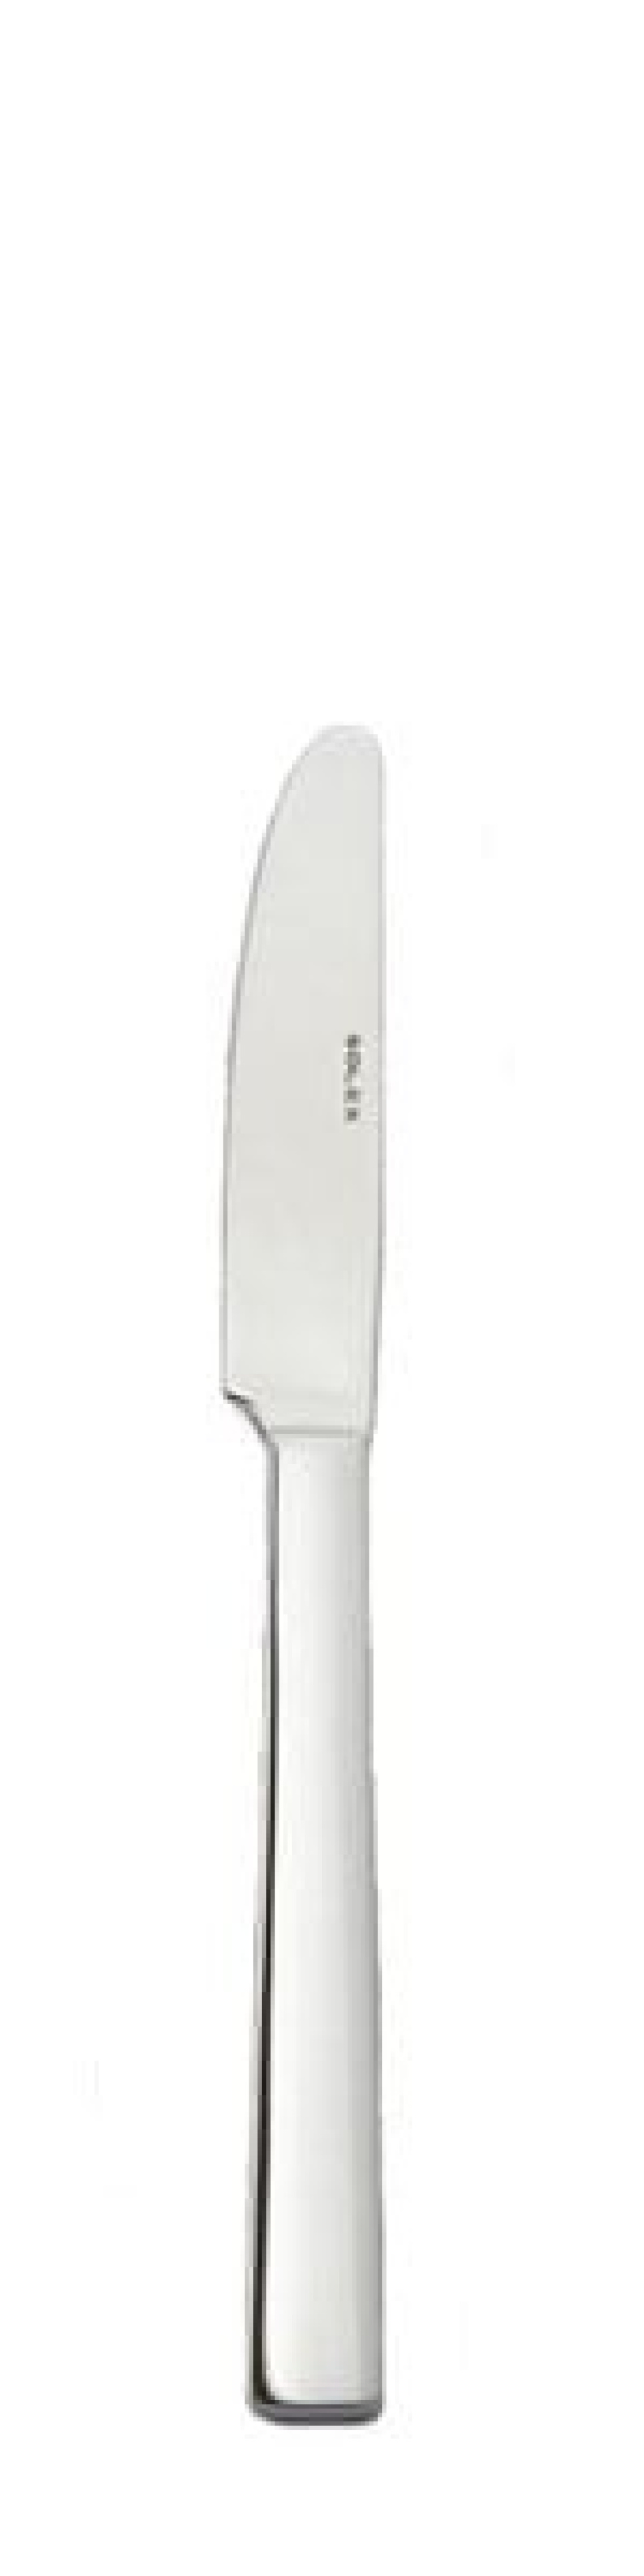 Maya Bordskniv 213 mm - Solex i gruppen Dukning / Bestick / Knivar hos KitchenLab (1284-21588)